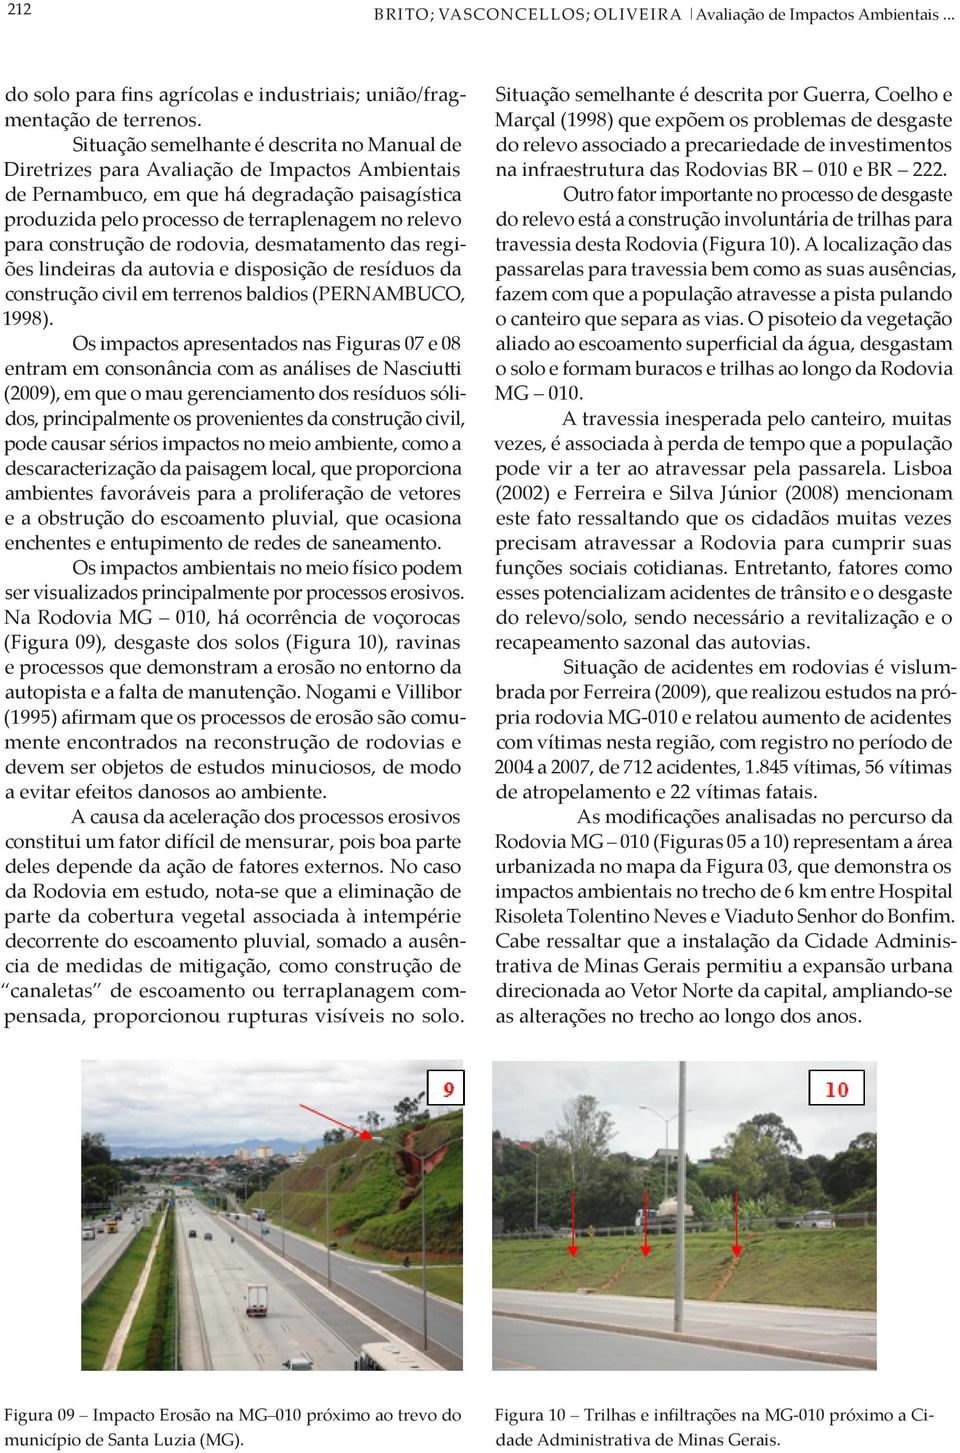 construção de rodovia, desmatamento das regiões lindeiras da autovia e disposição de resíduos da construção civil em terrenos baldios (PERNAMBUCO, 1998).